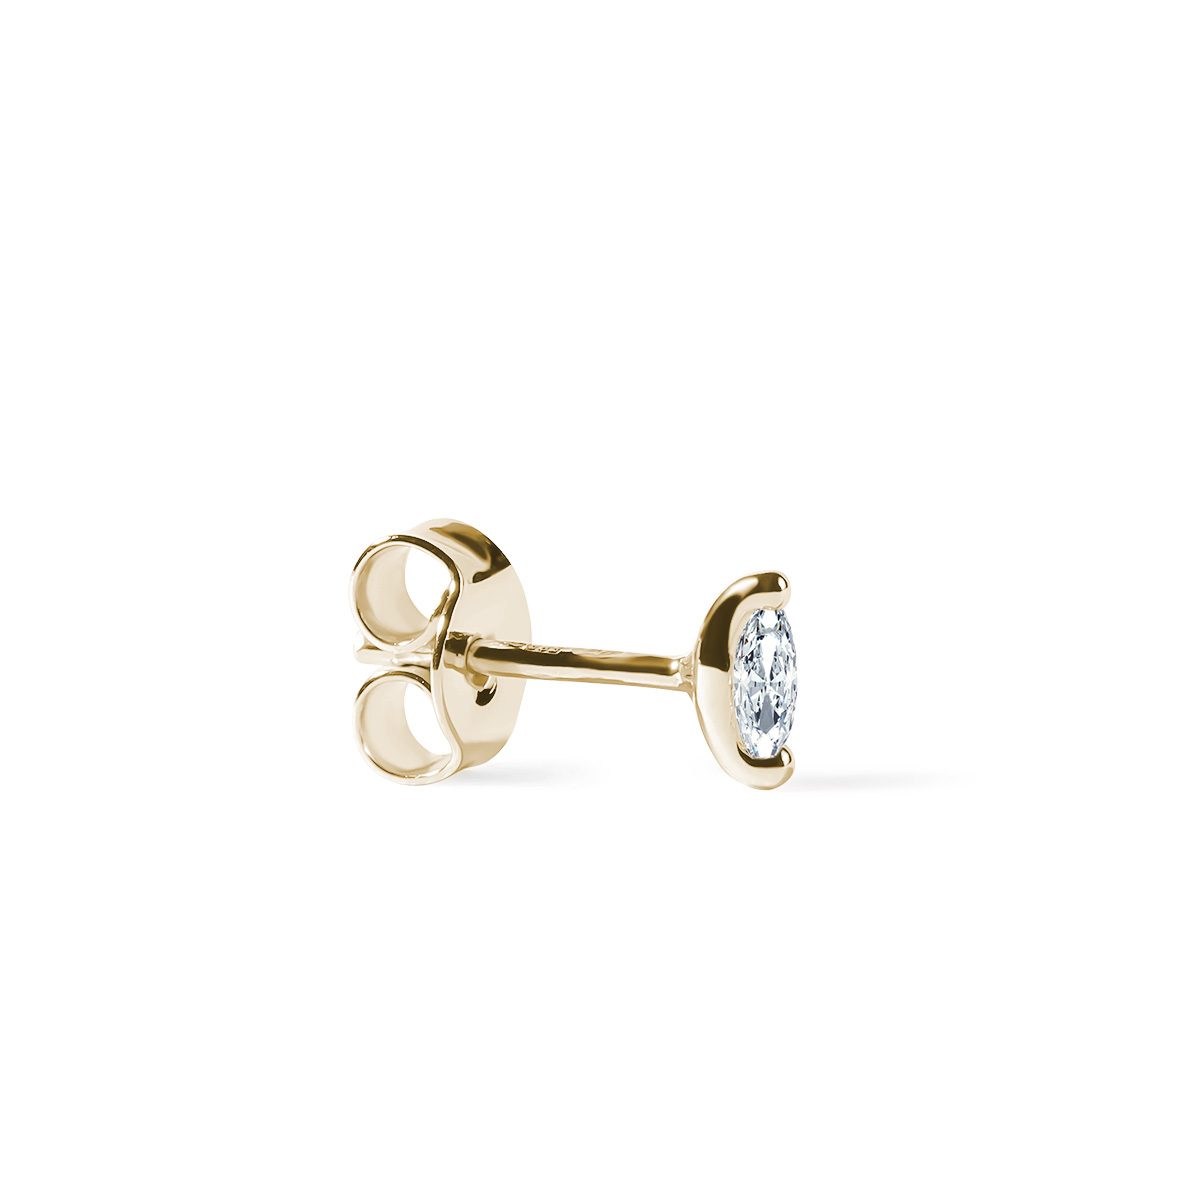 Náušnice na jedno ucho: moderní twist do vaší šperkařské sbírky | KLENOTA